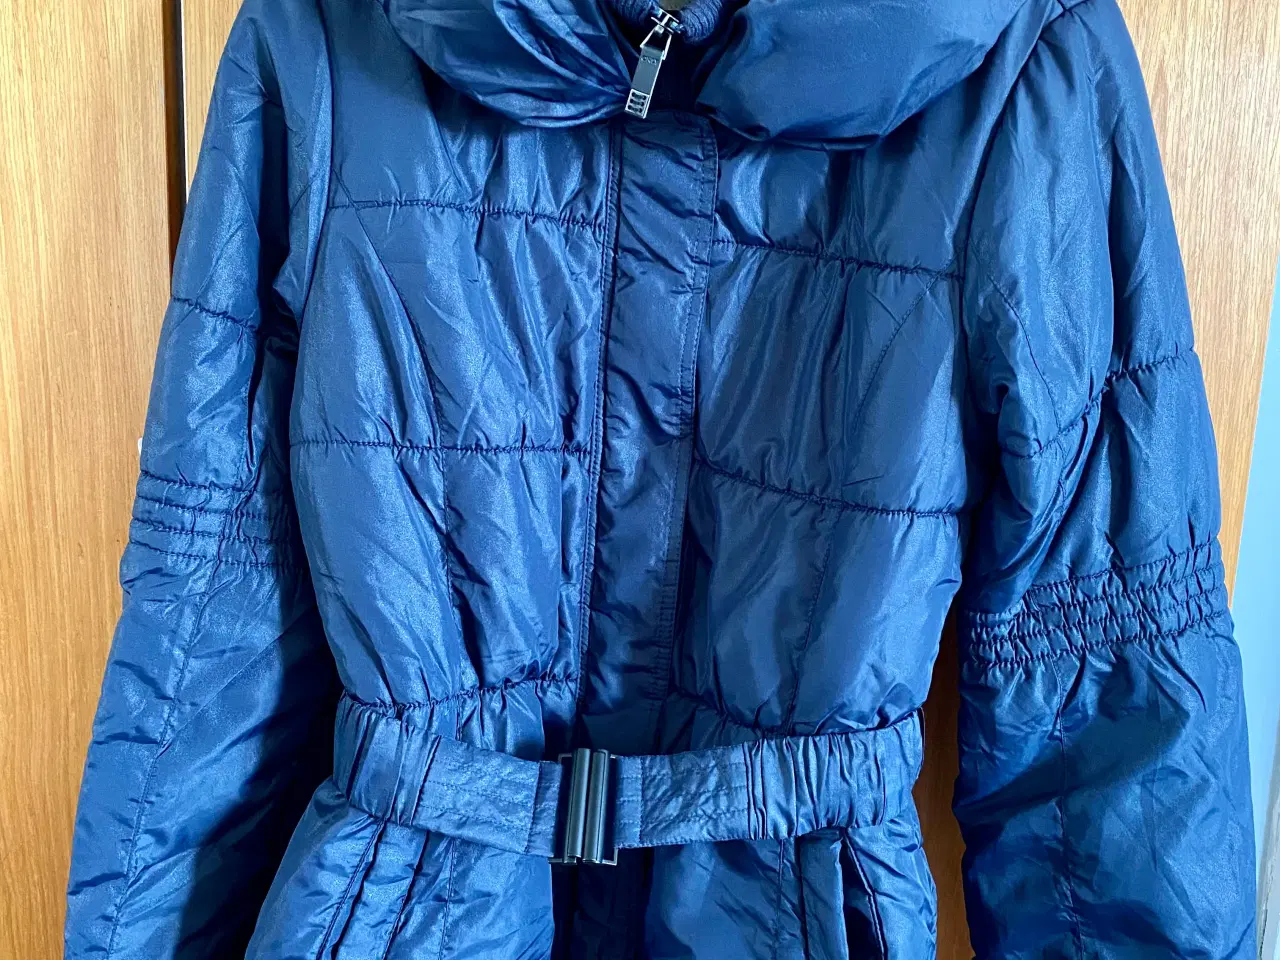 Billede 1 - Mørkeblå jakke til salg